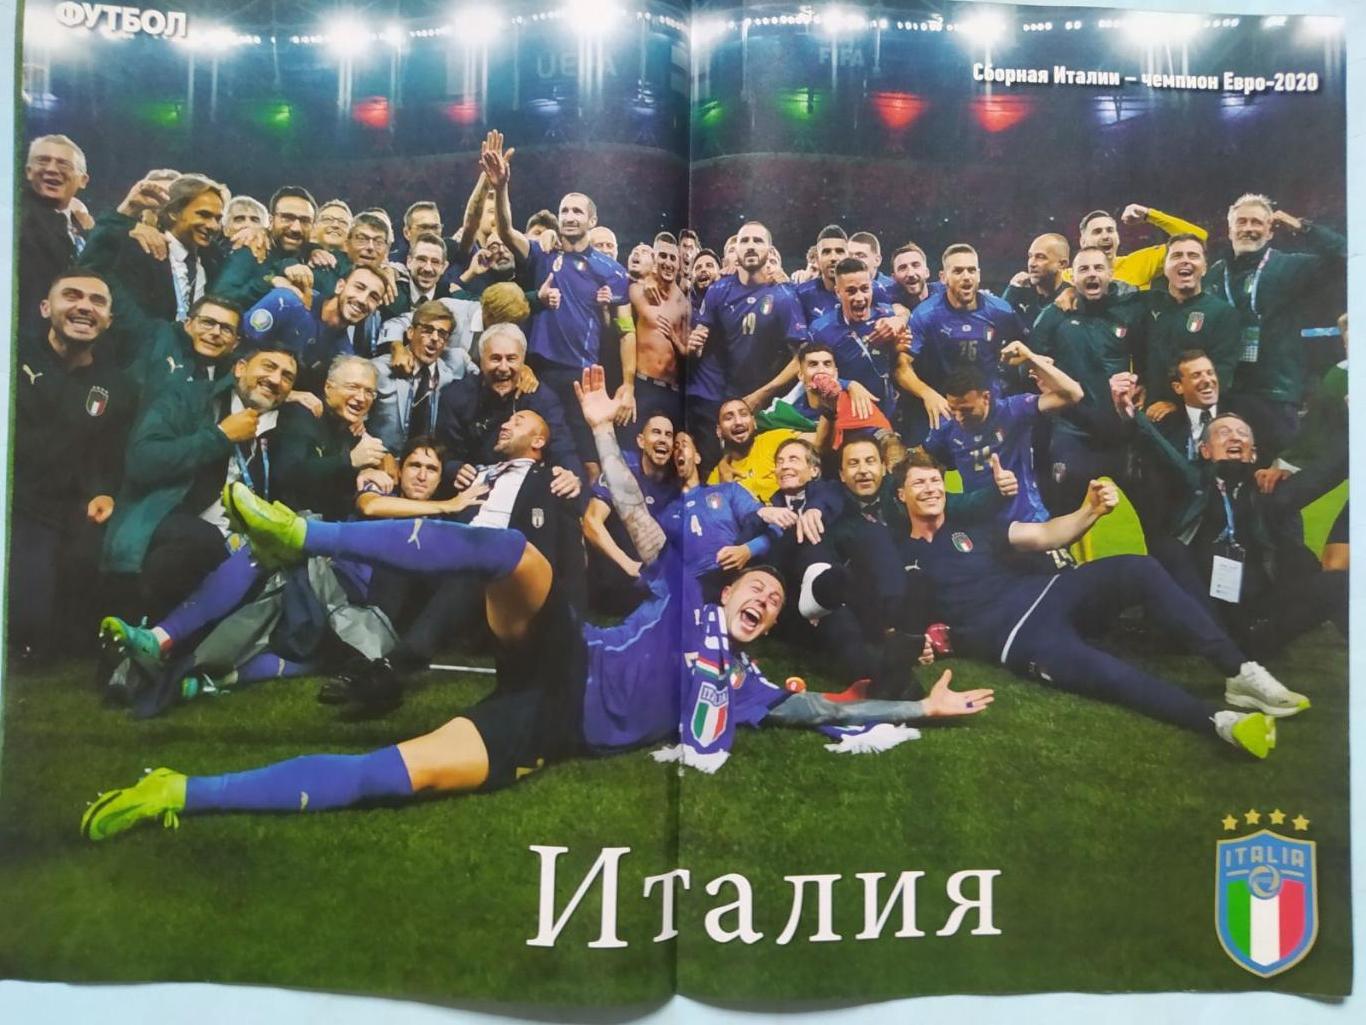 Еженедельник Футбол Украина № 53 за 2021 год 1